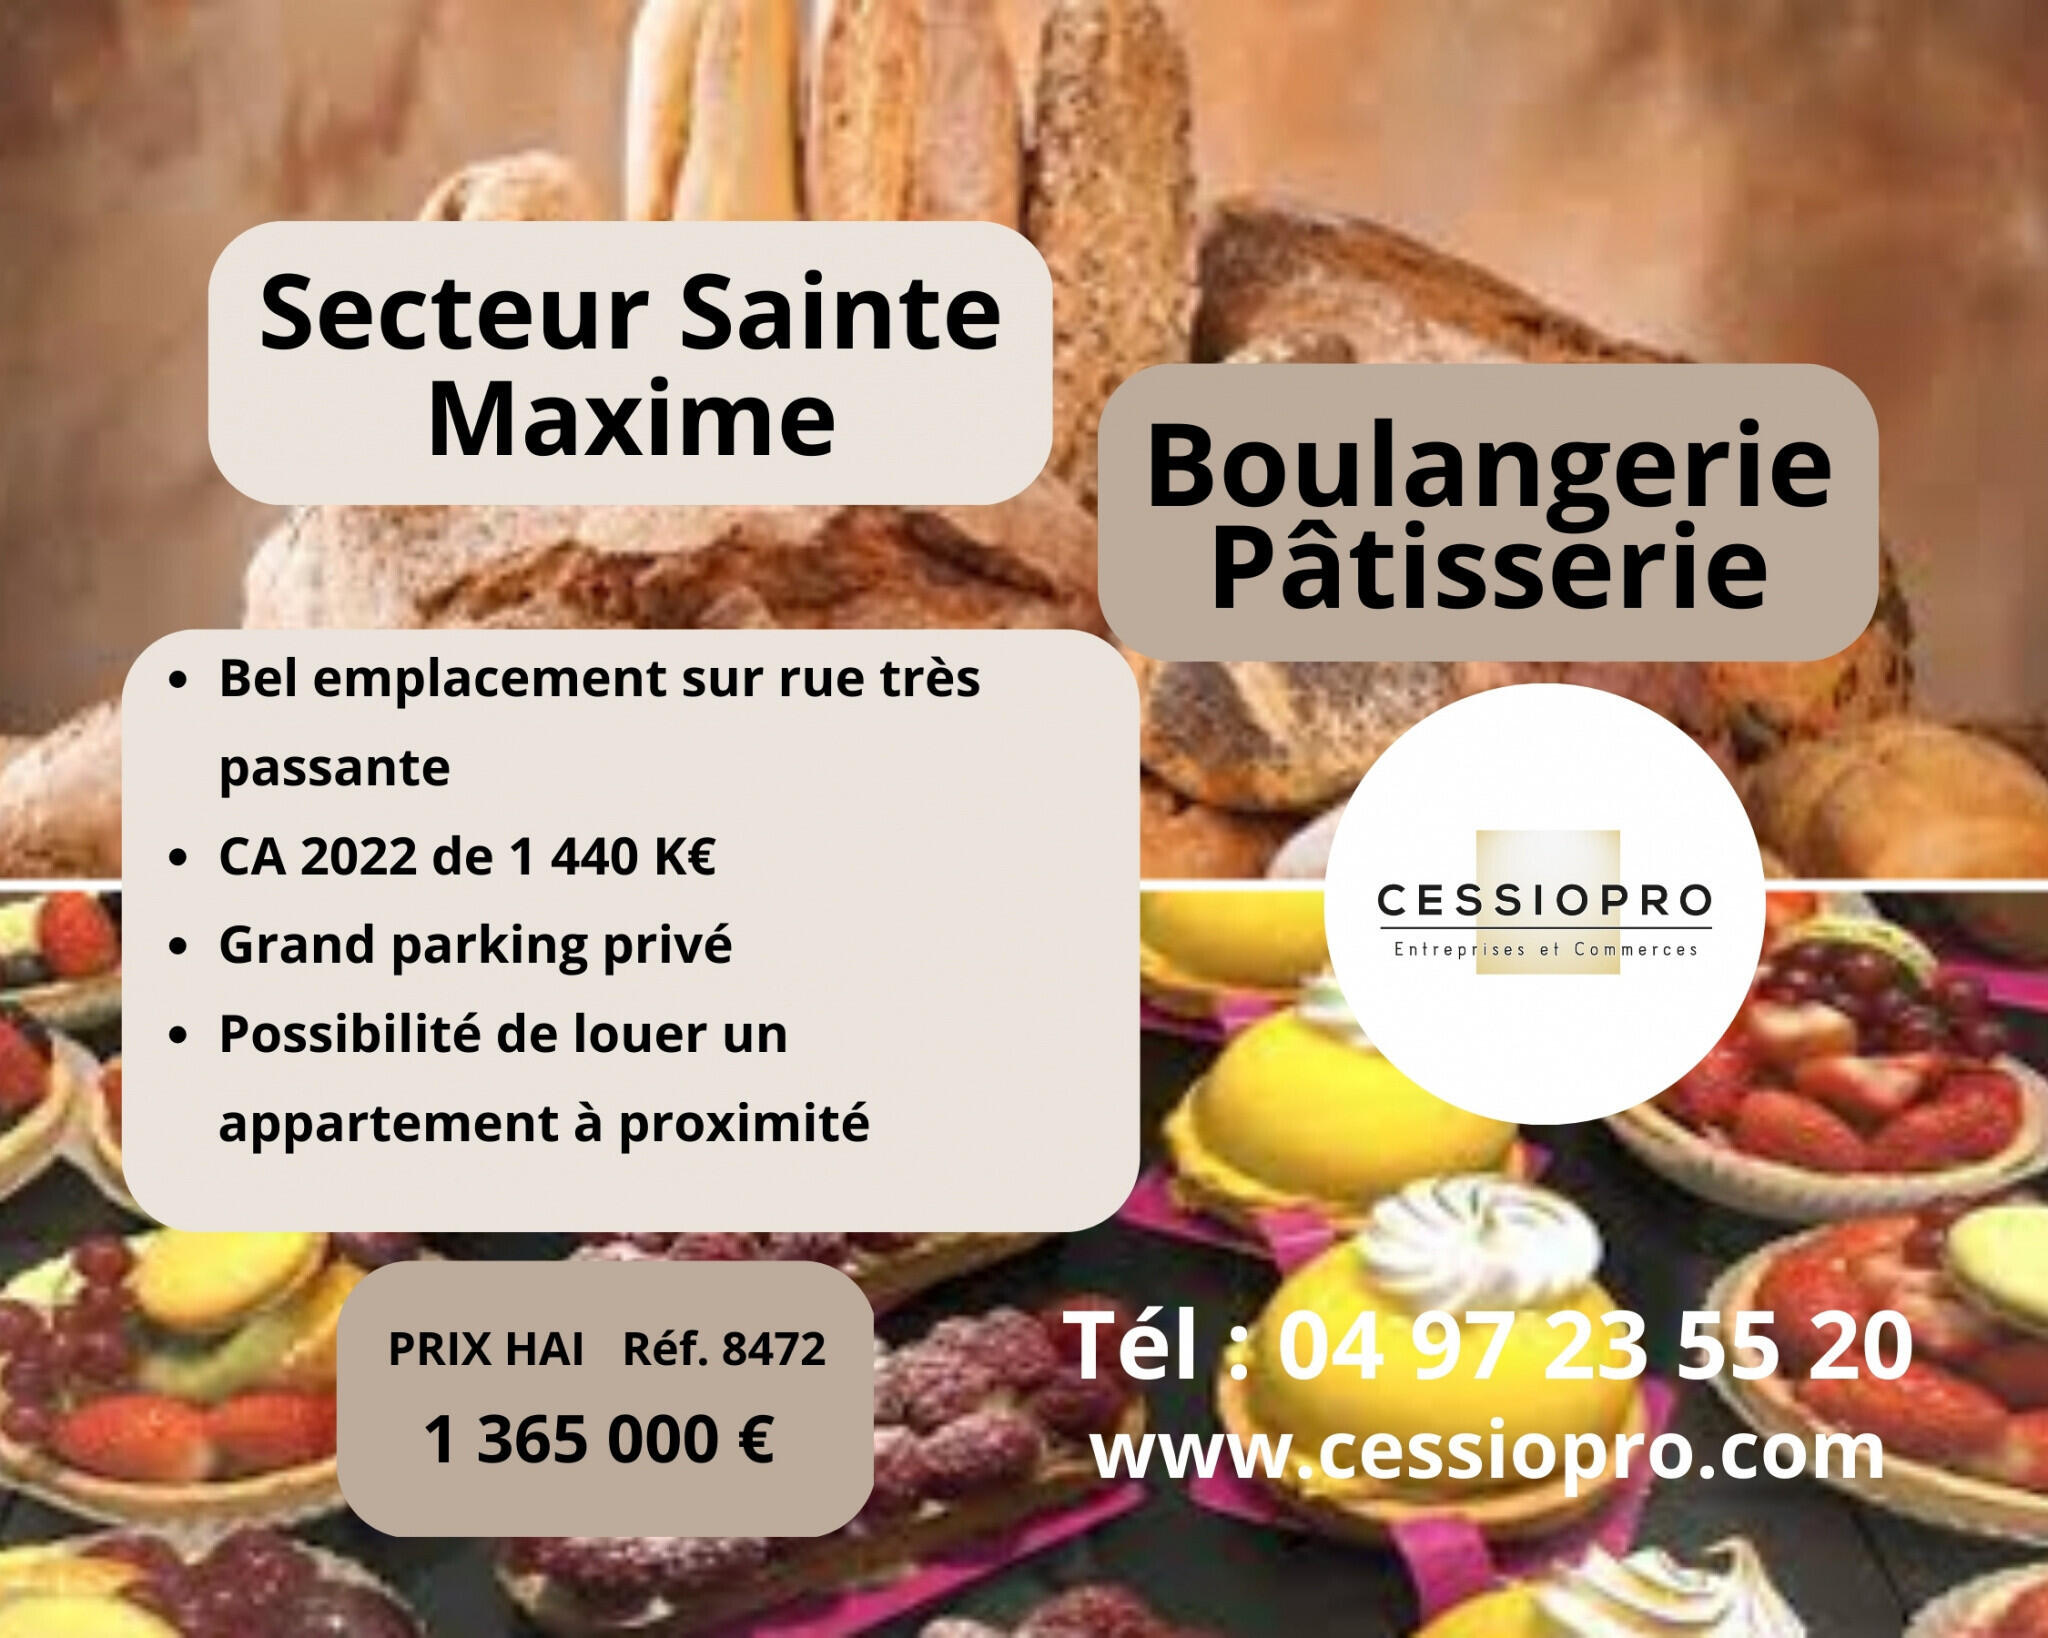 Vend boulangerie pâtisserie secteur Ste Maxime